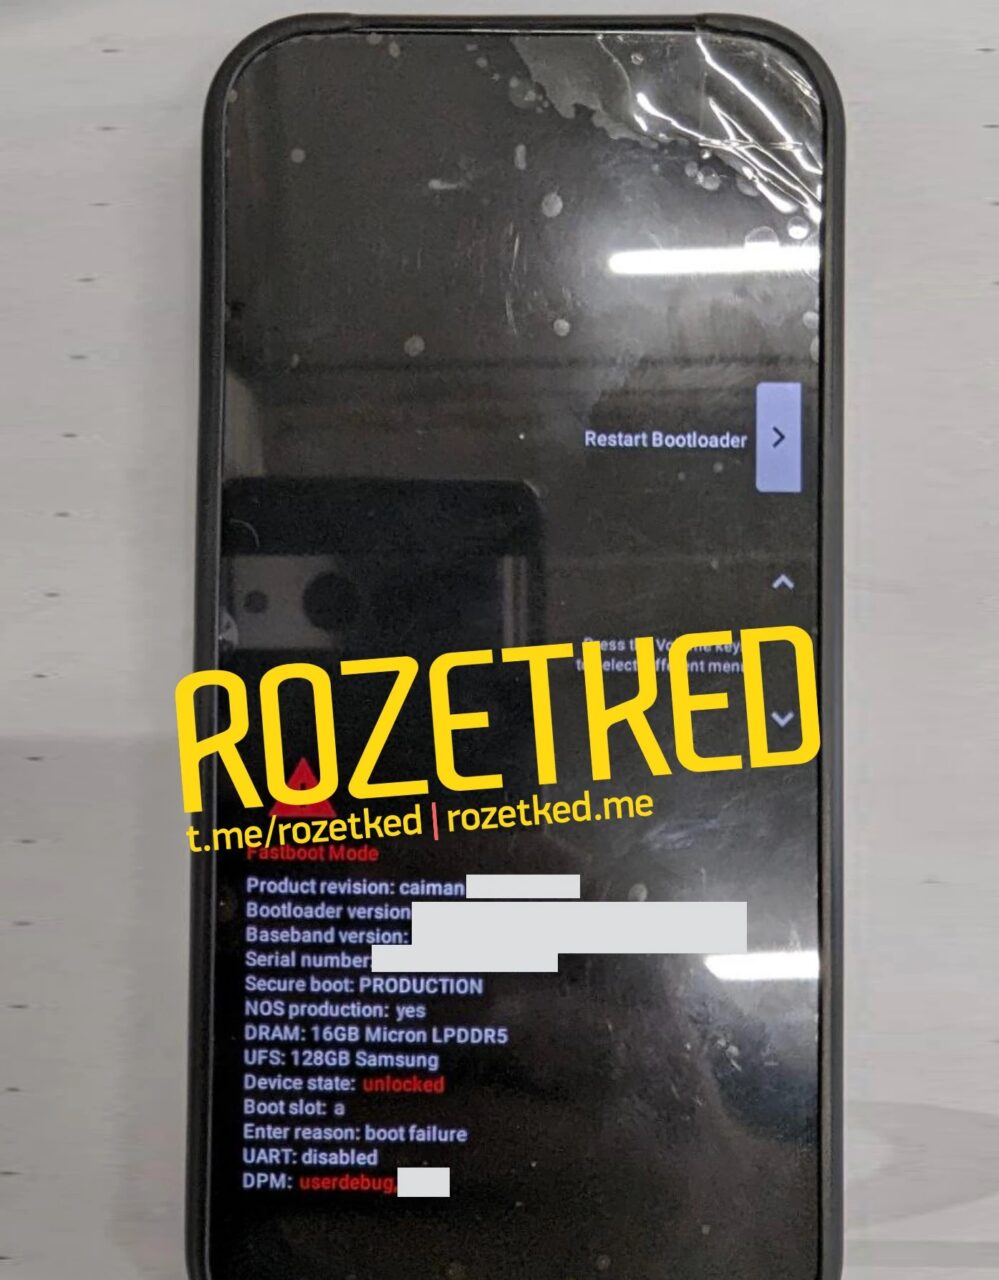 Smartfon z wyświetlonym ekranem bootloadera i naklejką "ROZETKRED" oraz adresami URL.